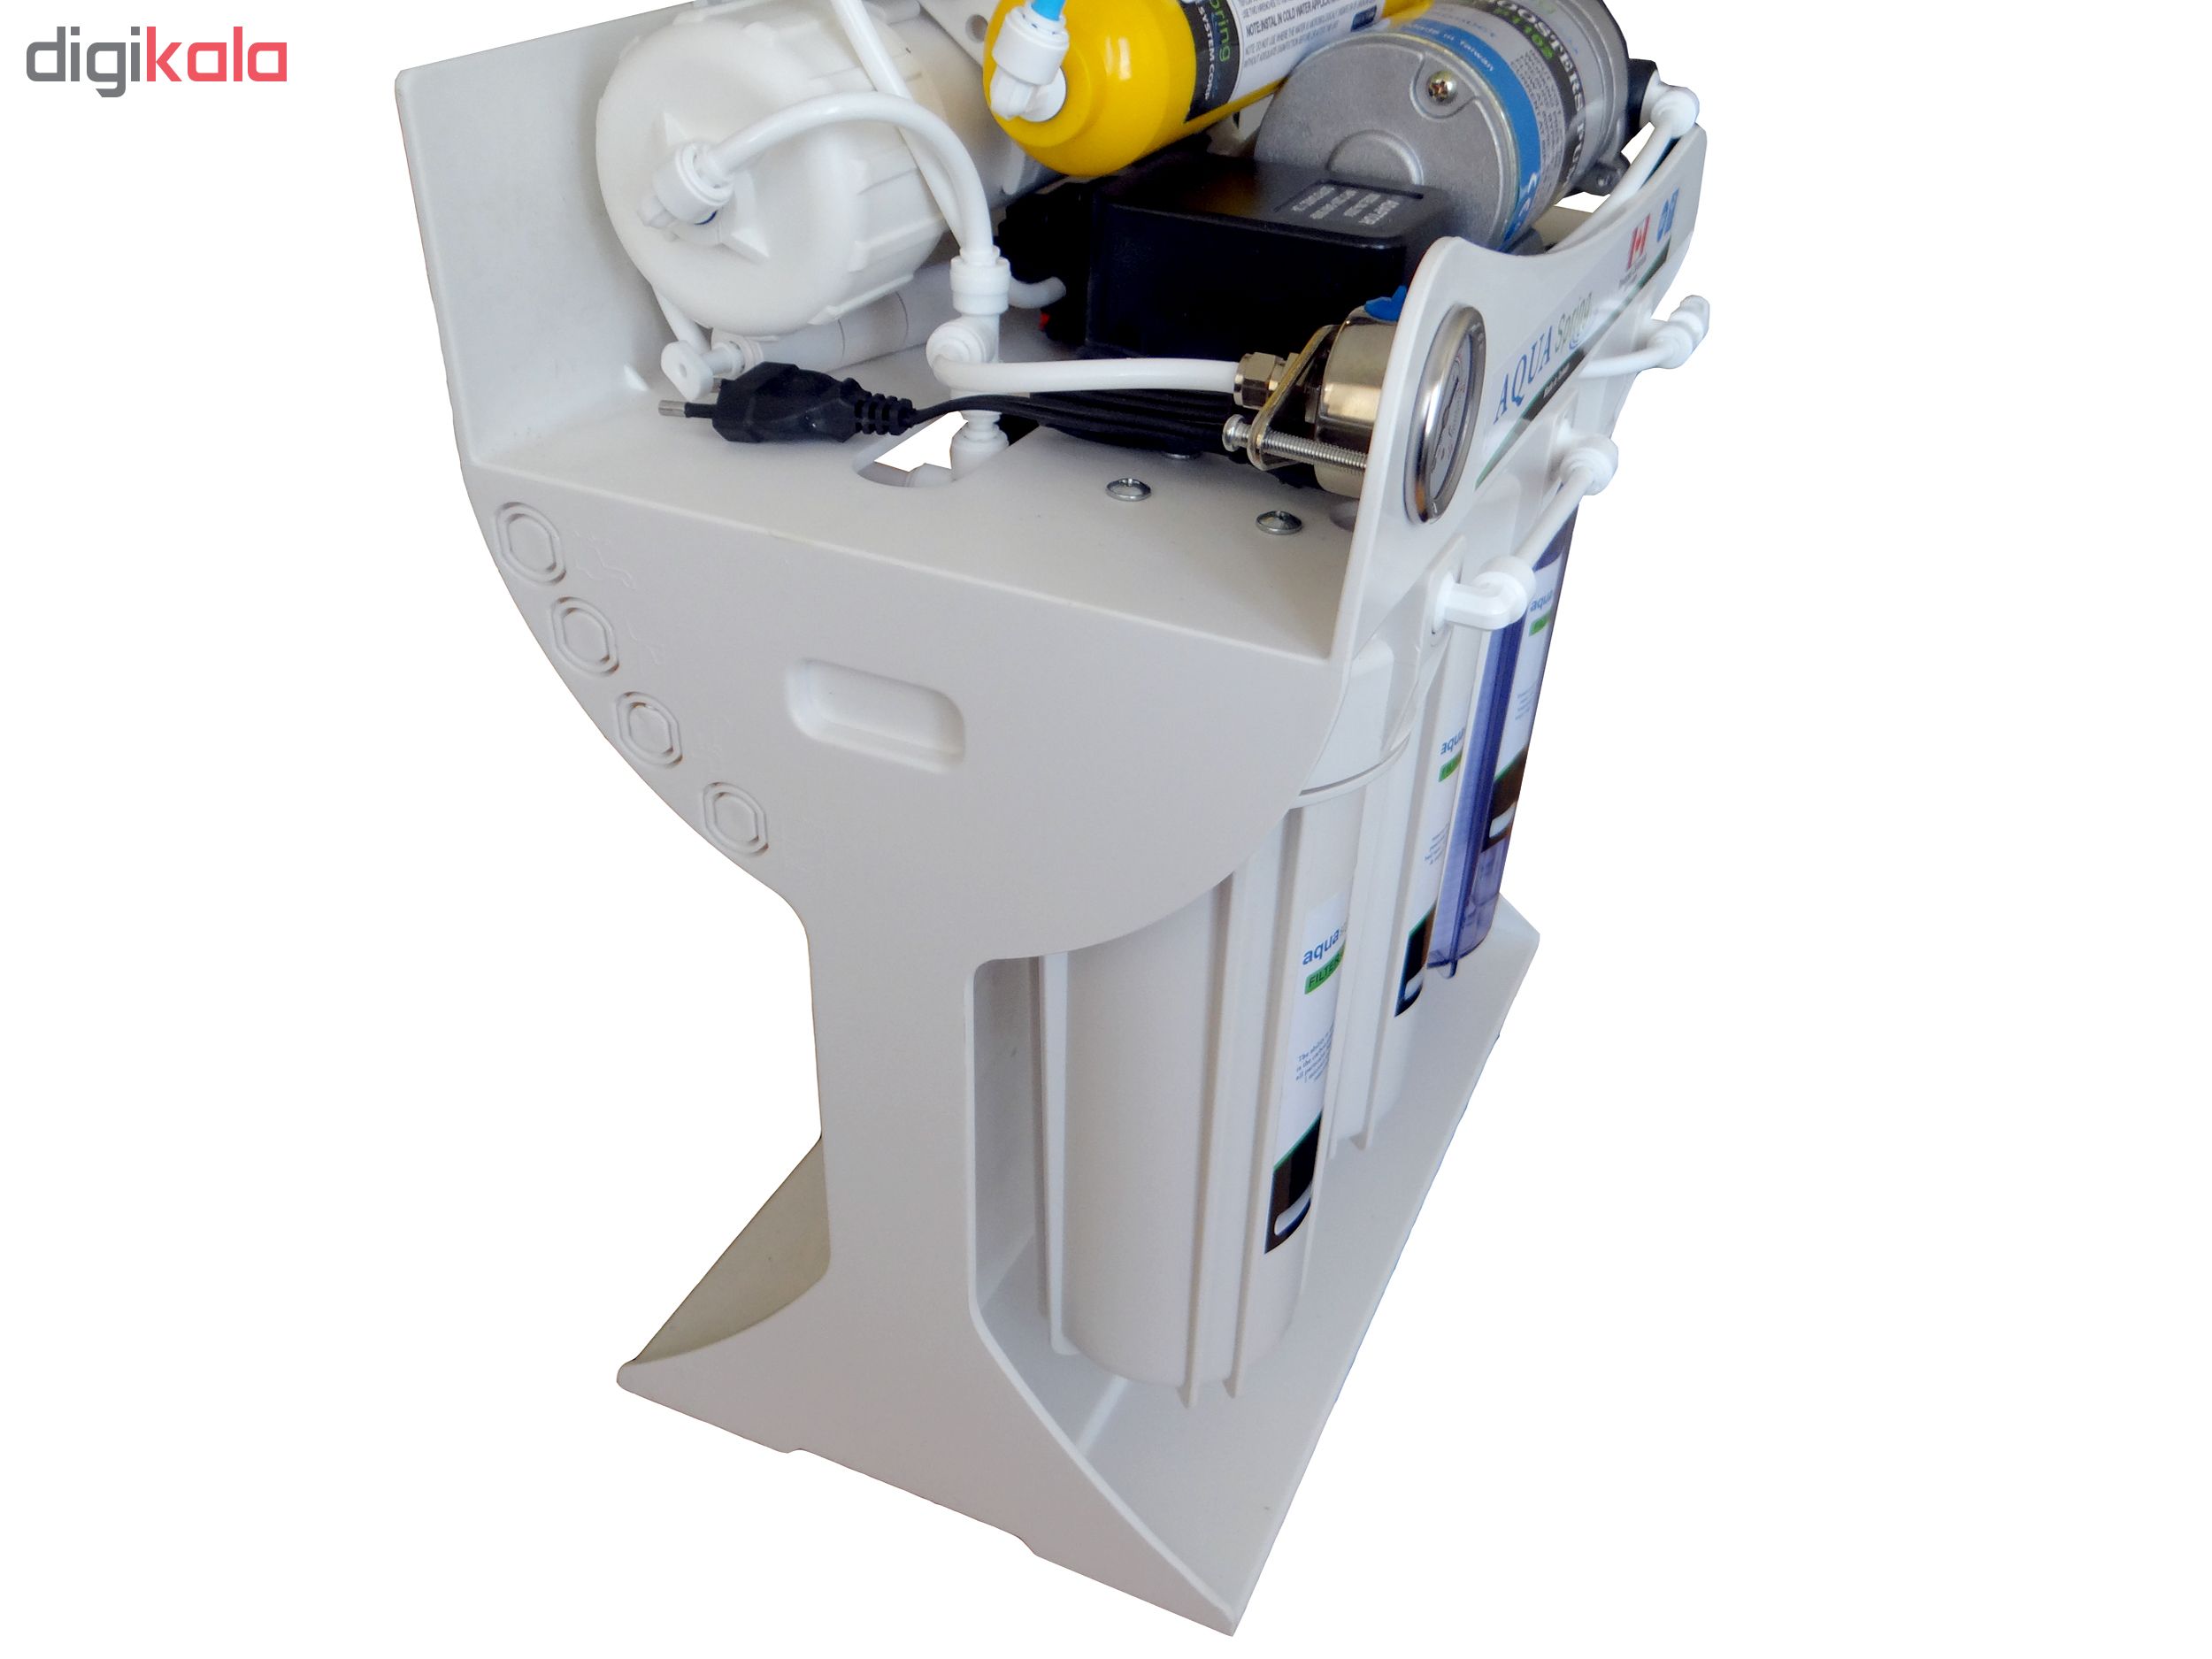 دستگاه تصفیه کننده آب آکوآ اسپرینگ مدل UF-SF4000 به همراه فیلتر دستگاه تصفیه کننده آب کد 01 بسته 4 عددی